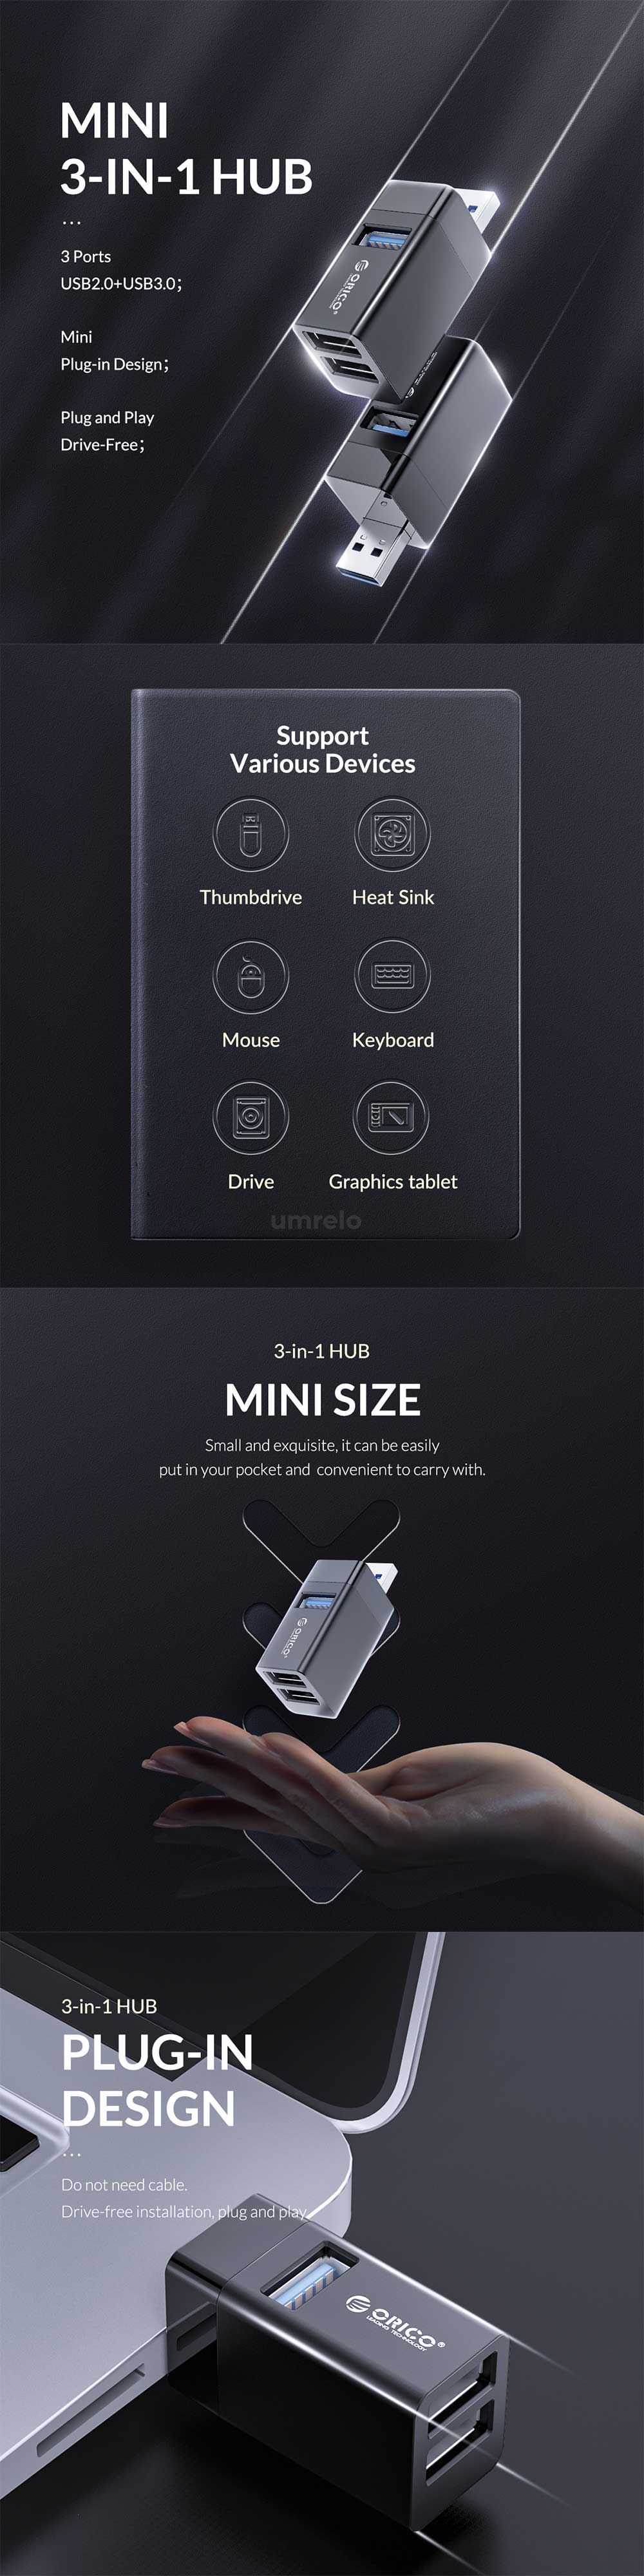 ORICO Mini 3 in 1 USB HUB MINI U32 4